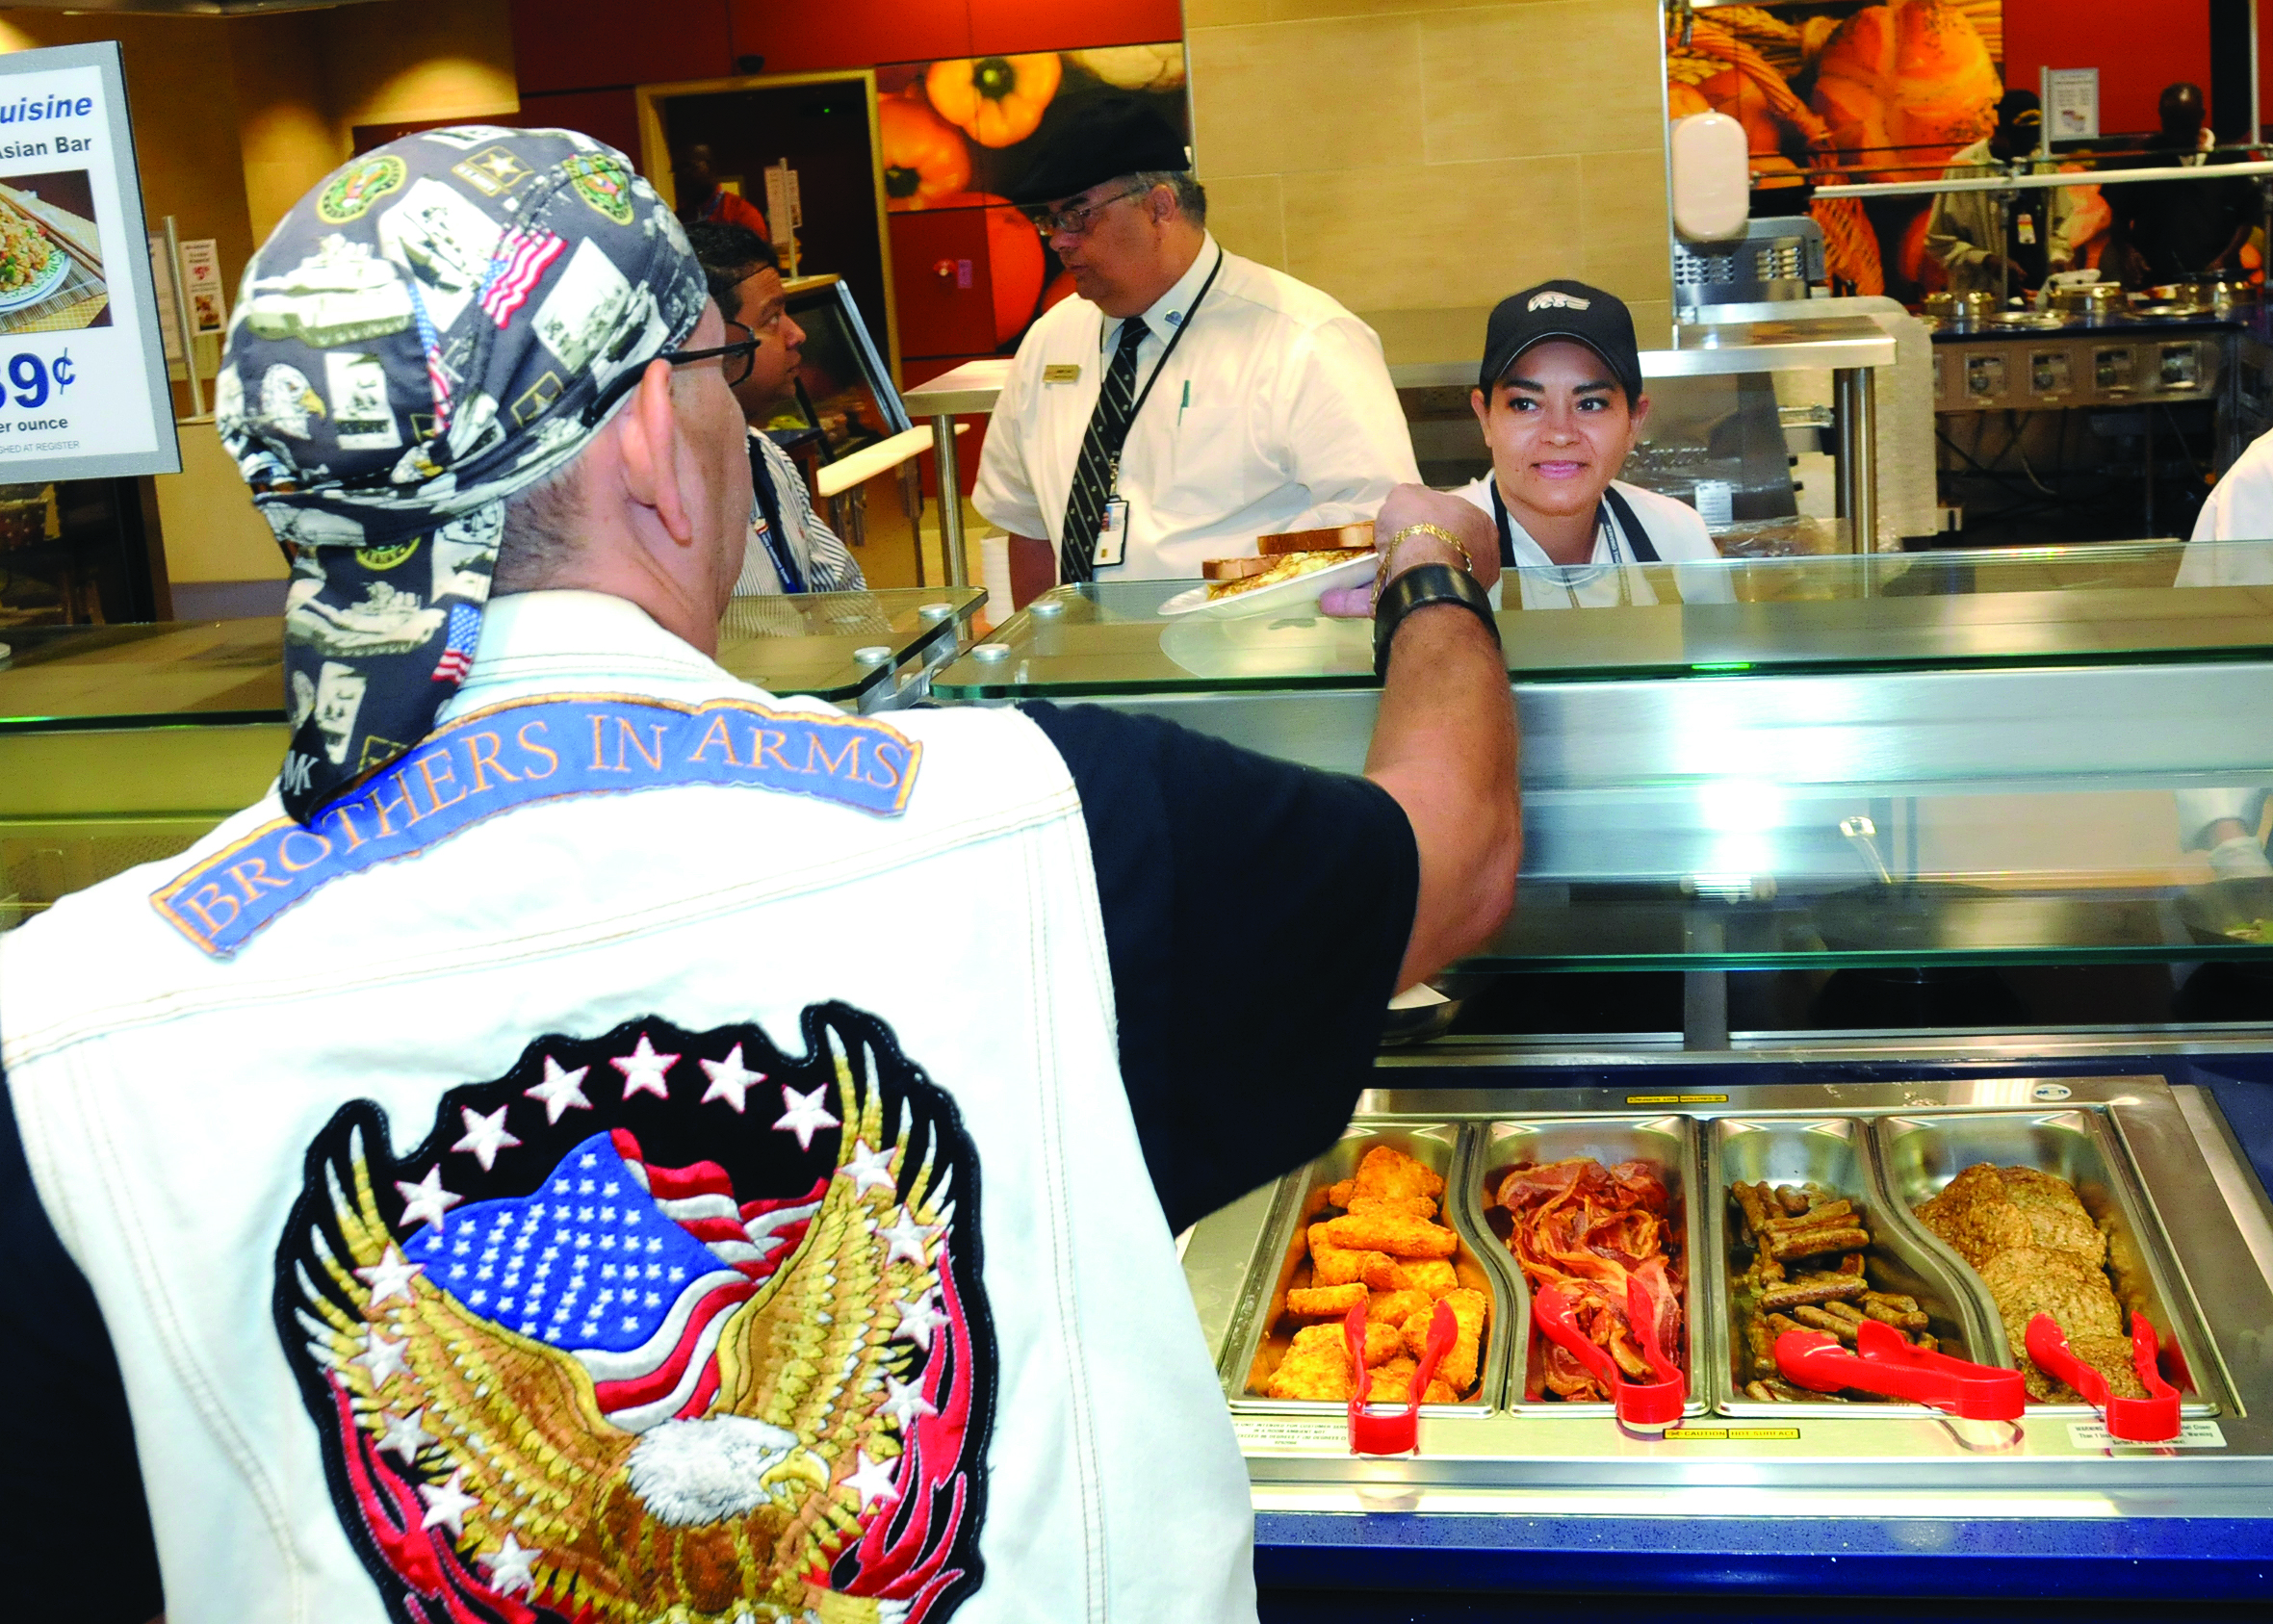 VCS PatriotBrew Coffee Shops - Veterans Canteen Service (VCS)